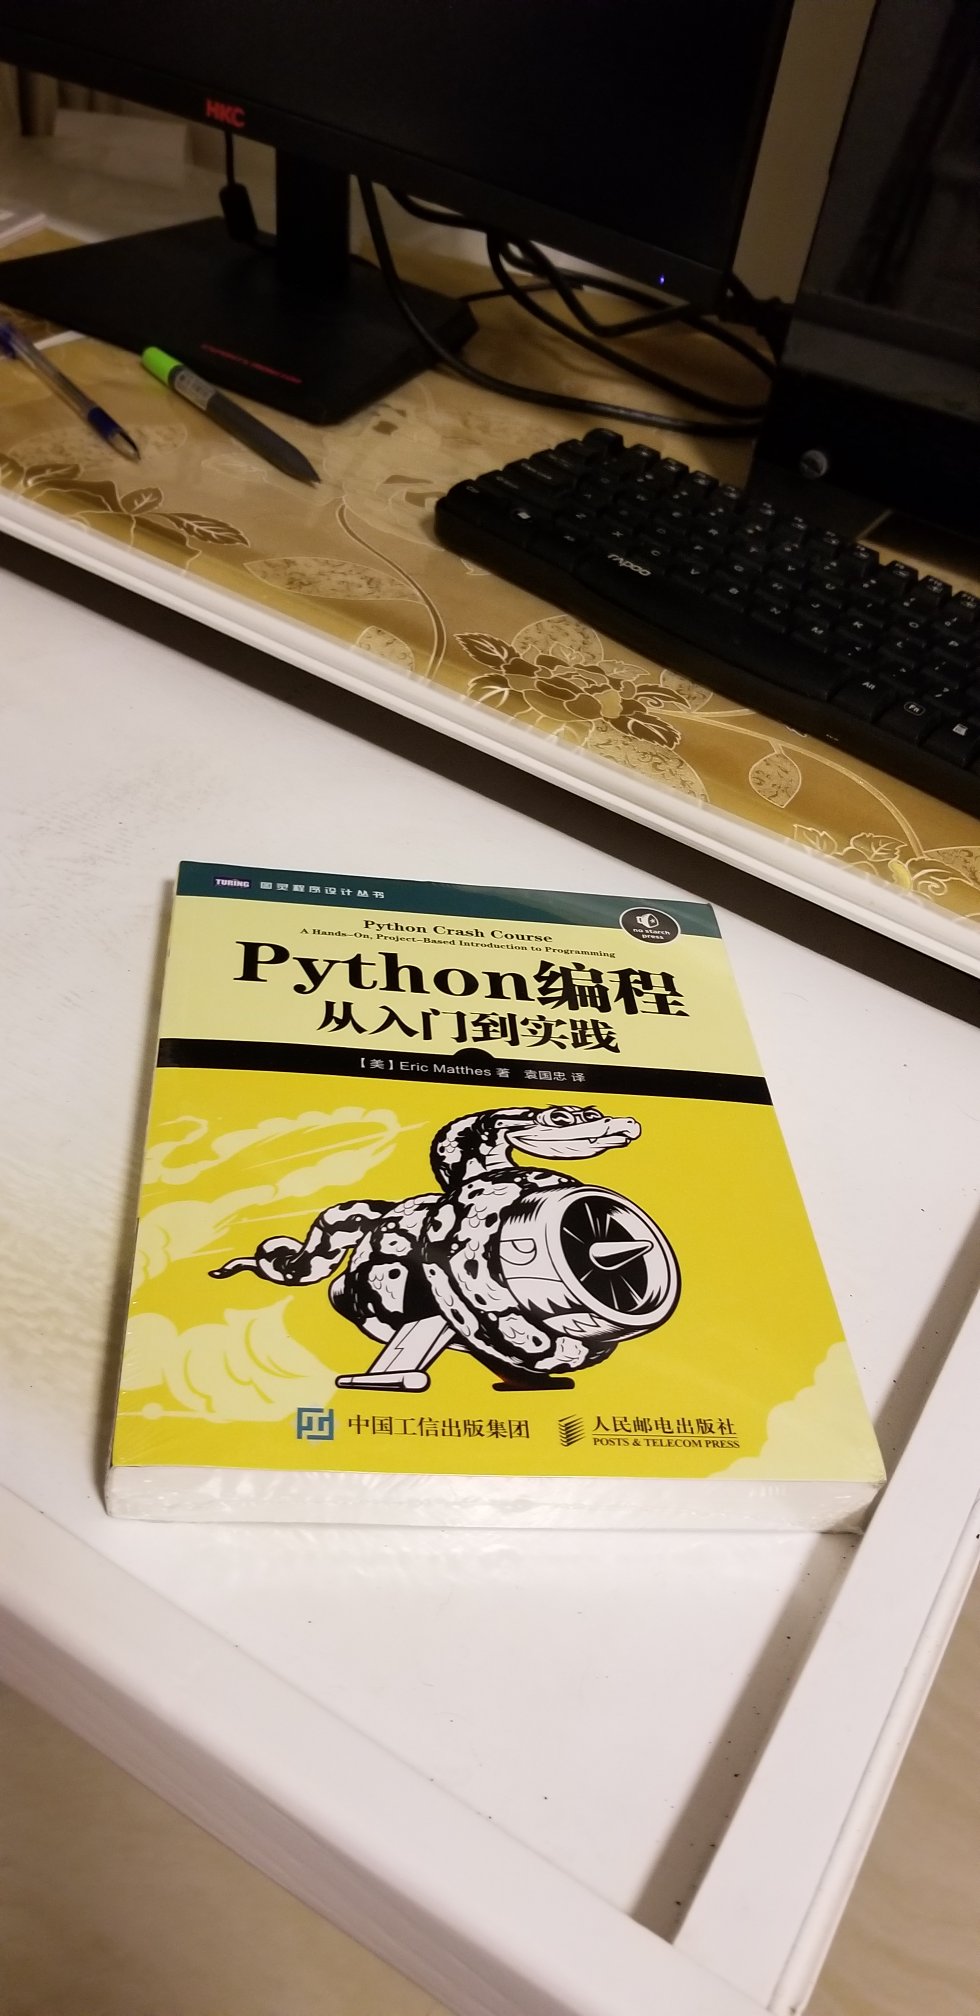 包装保护得很好，送货很快，书刚到还没好好看，想入门学Python很多人都推荐了这本书，所以就买下来了。